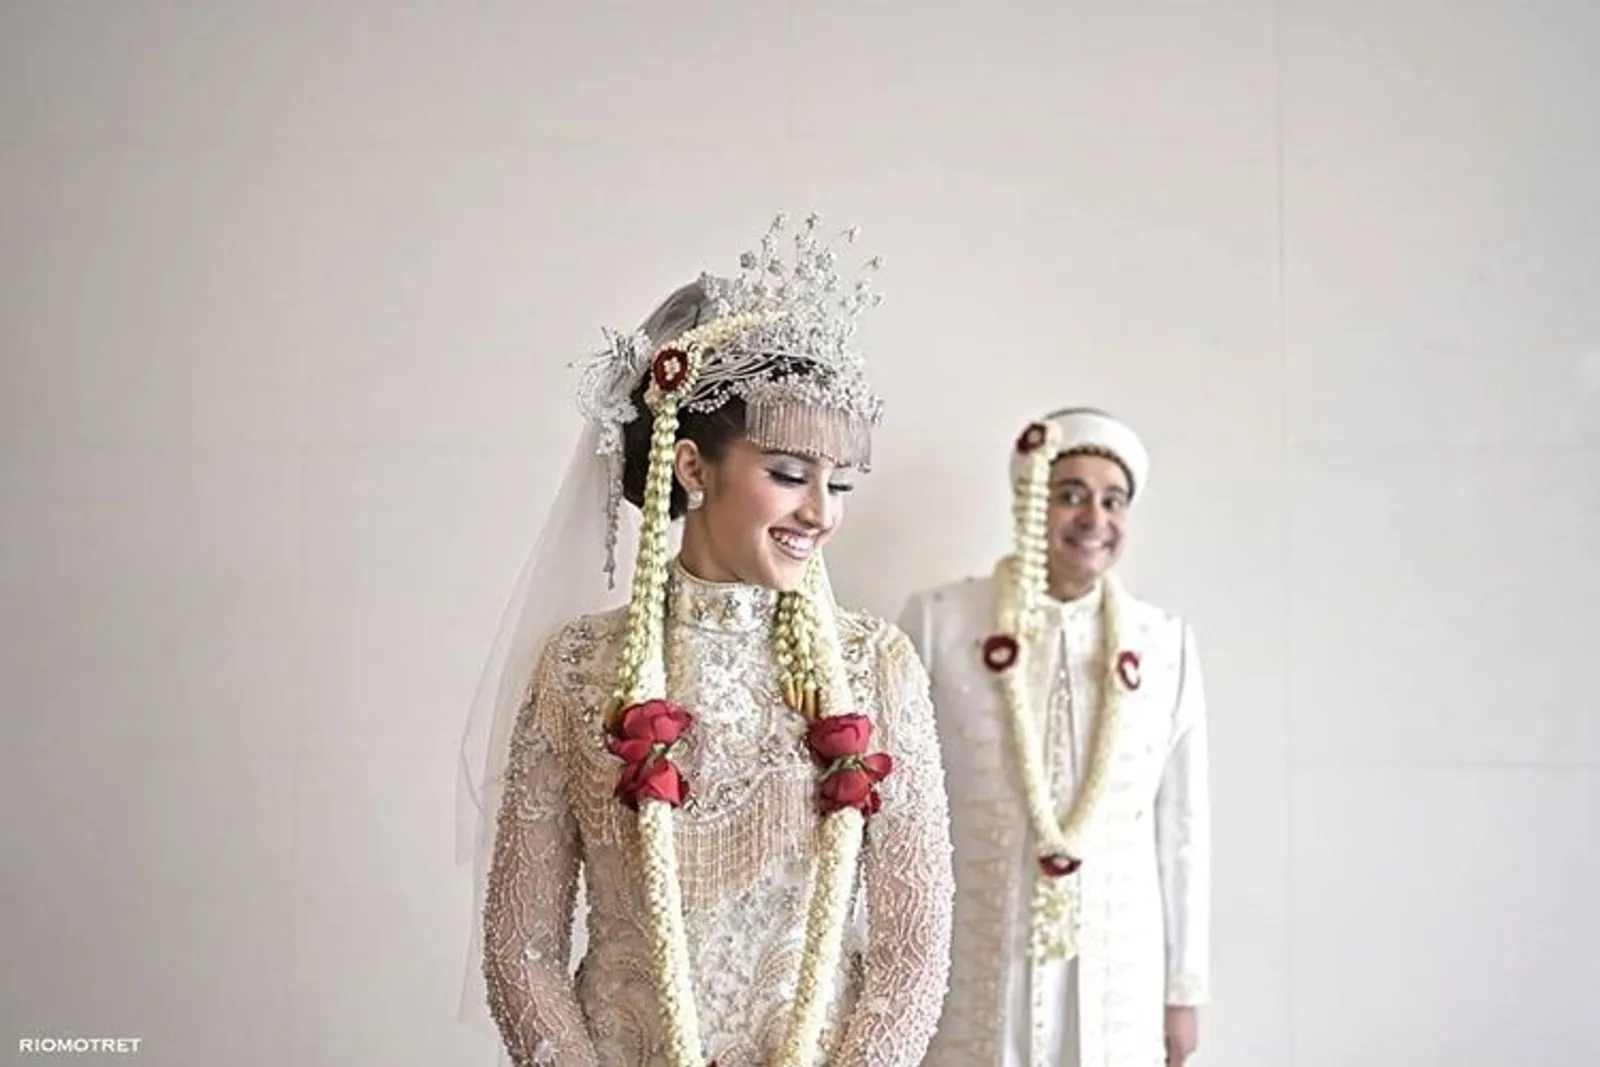 Dihadiri Presiden RI, Ini 5 Fakta di Balik Pernikahan Tsamara Amany